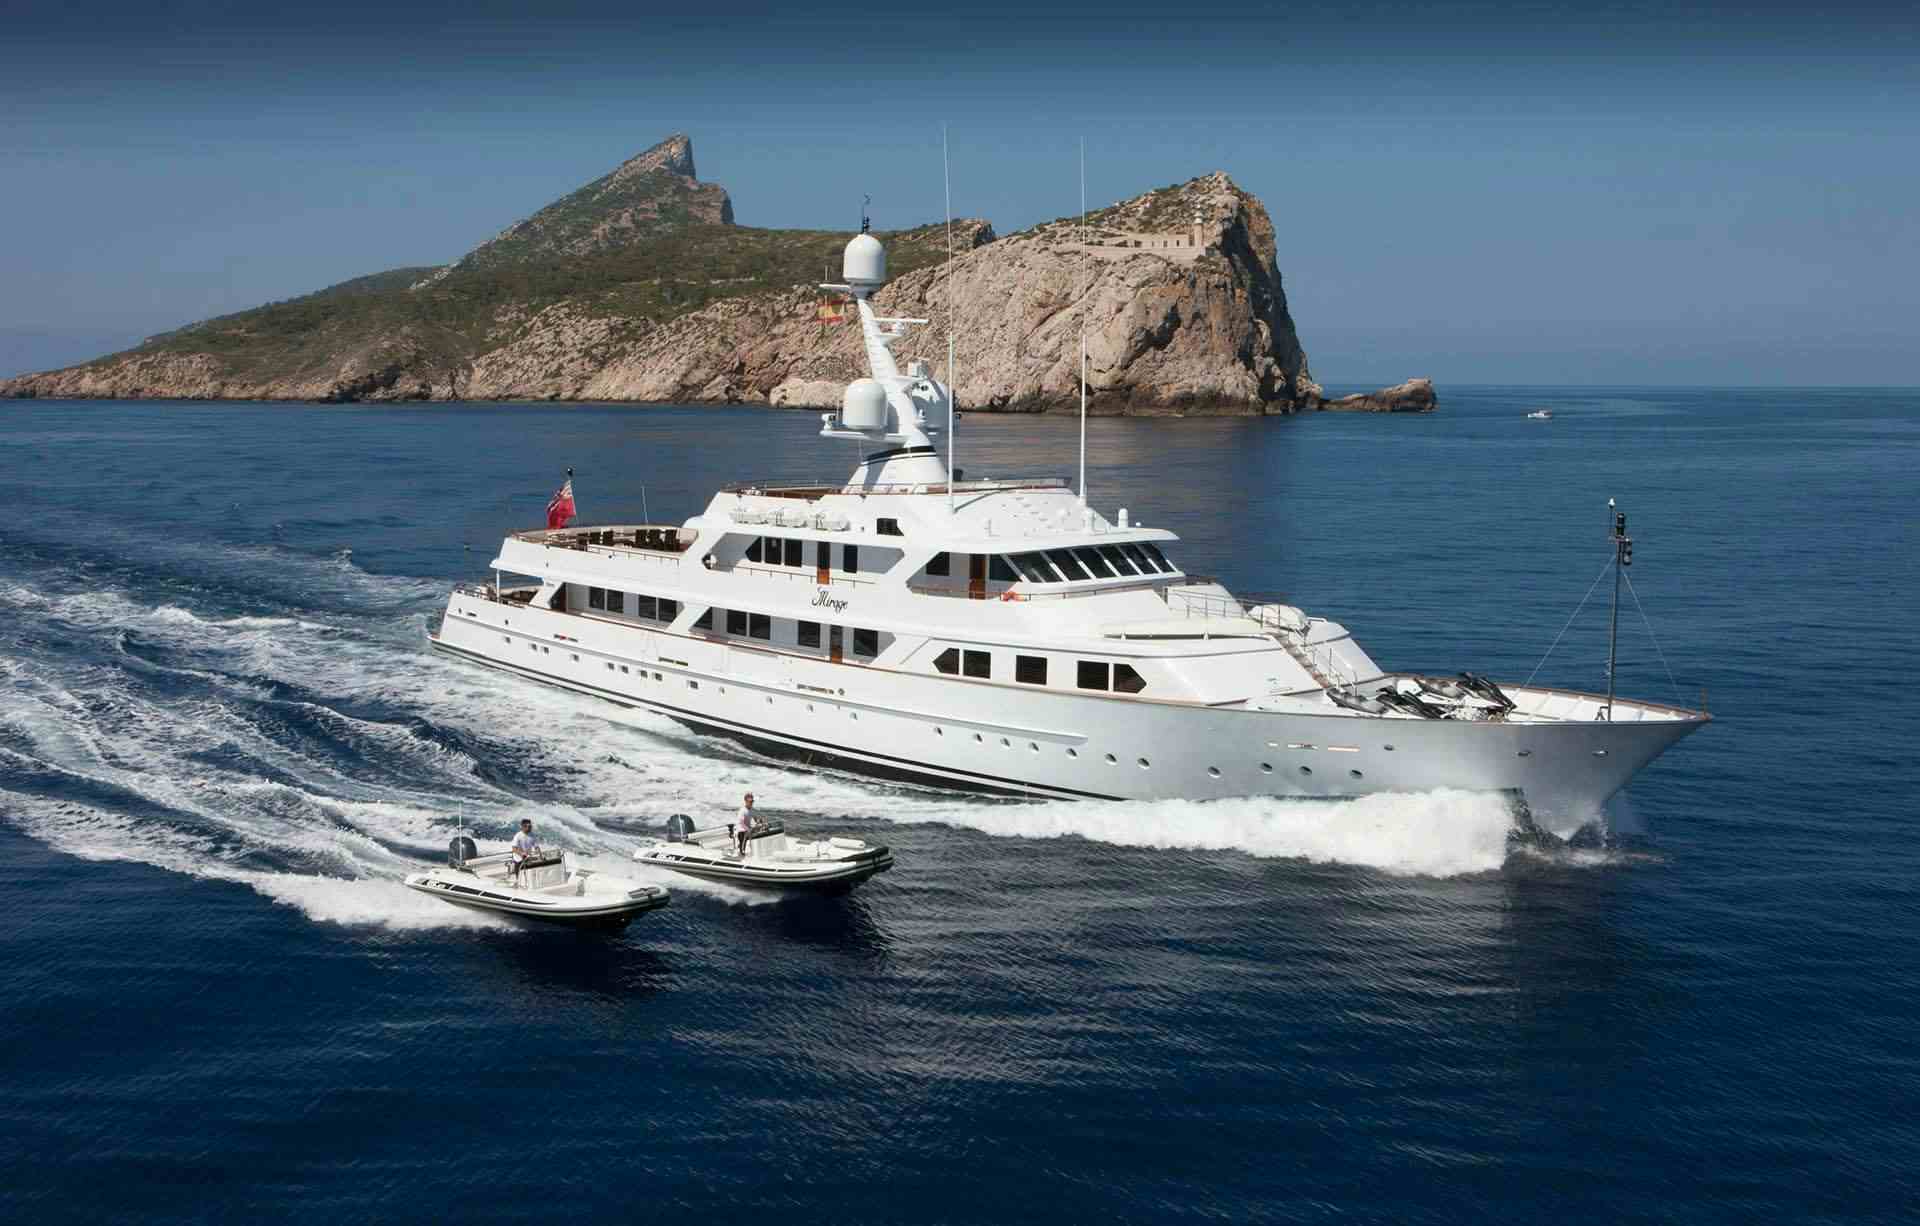 MIRAGE - Yacht Charter France & Boat hire in Fr. Riviera & Tyrrhenian Sea 1